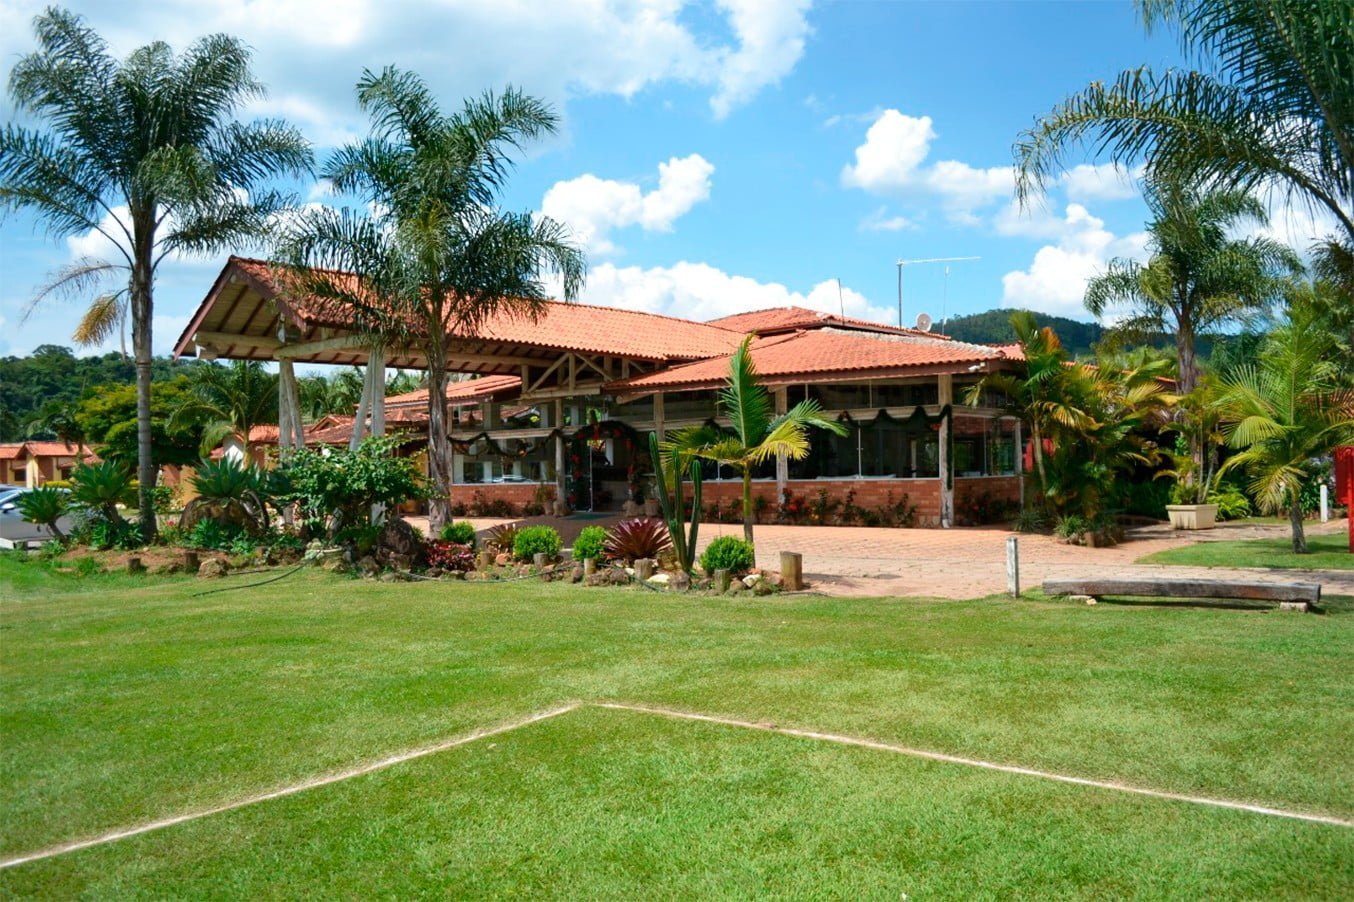 Hotel Fazenda Hípica Atibaia - Atibaia - Hotéis Fazenda perto de SP